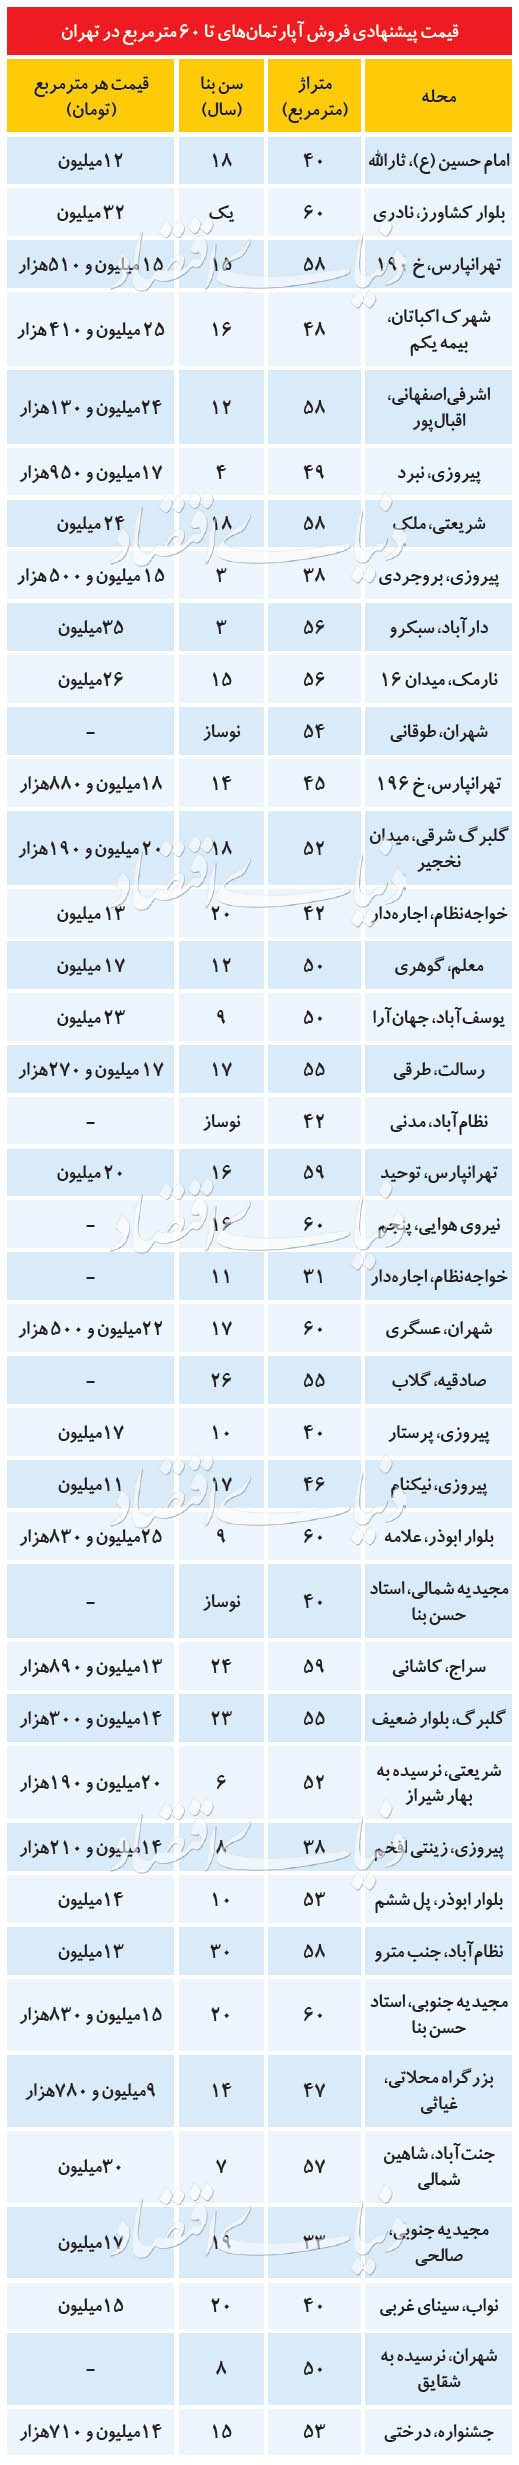 قیمت خرید خانه و نرخ اجاره مسکن در تهران امروز ۹ تیر ۹۹